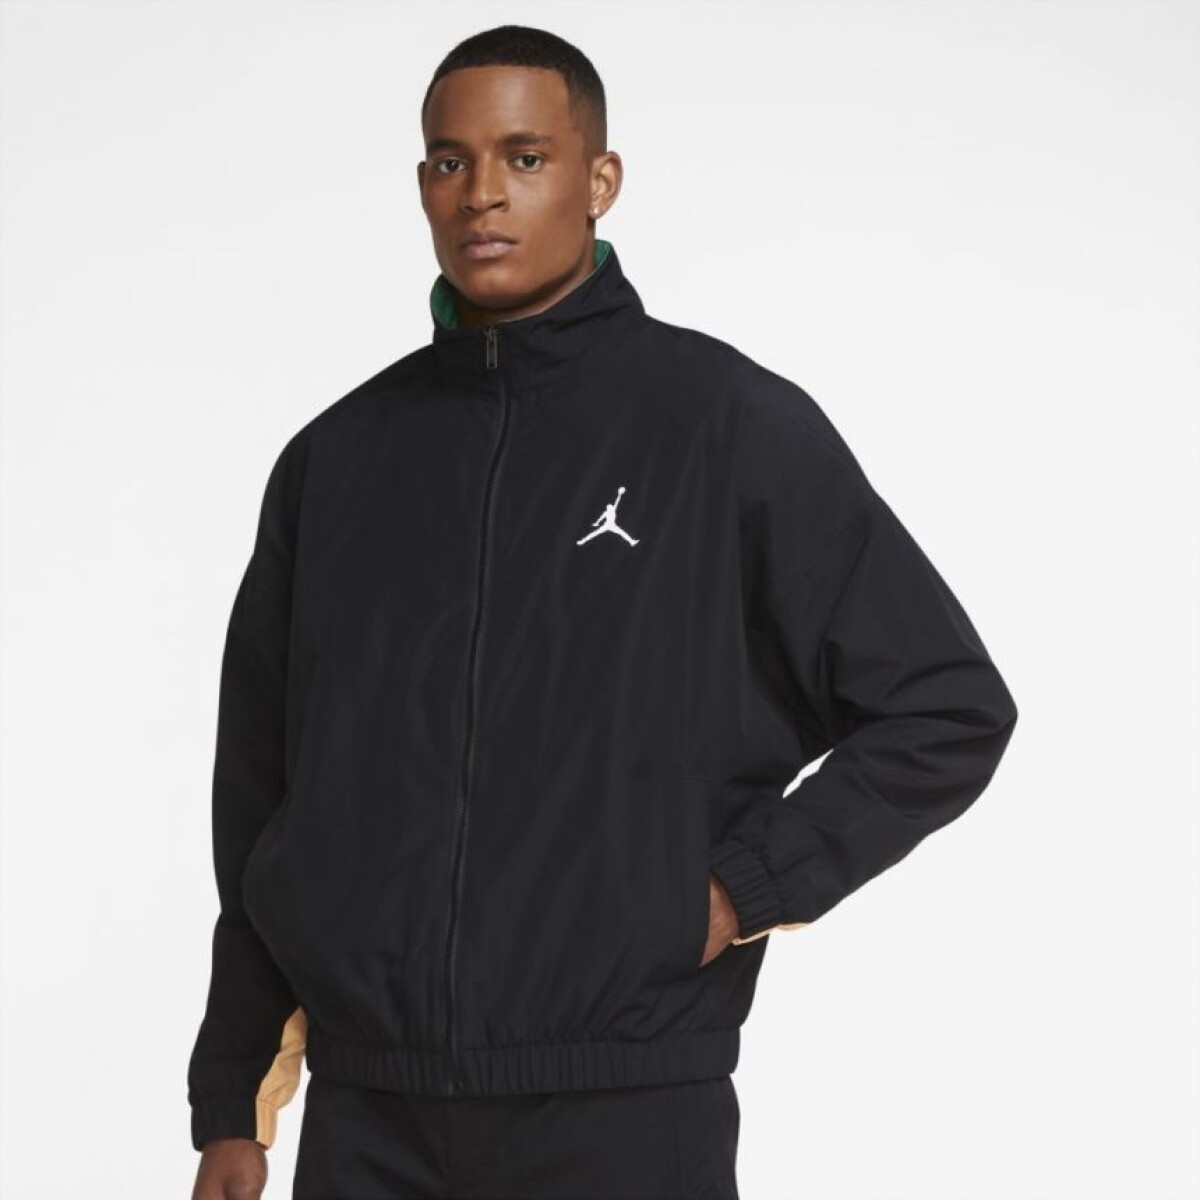 Campera Nike Moda Hombre Jordan Black - Color Único 